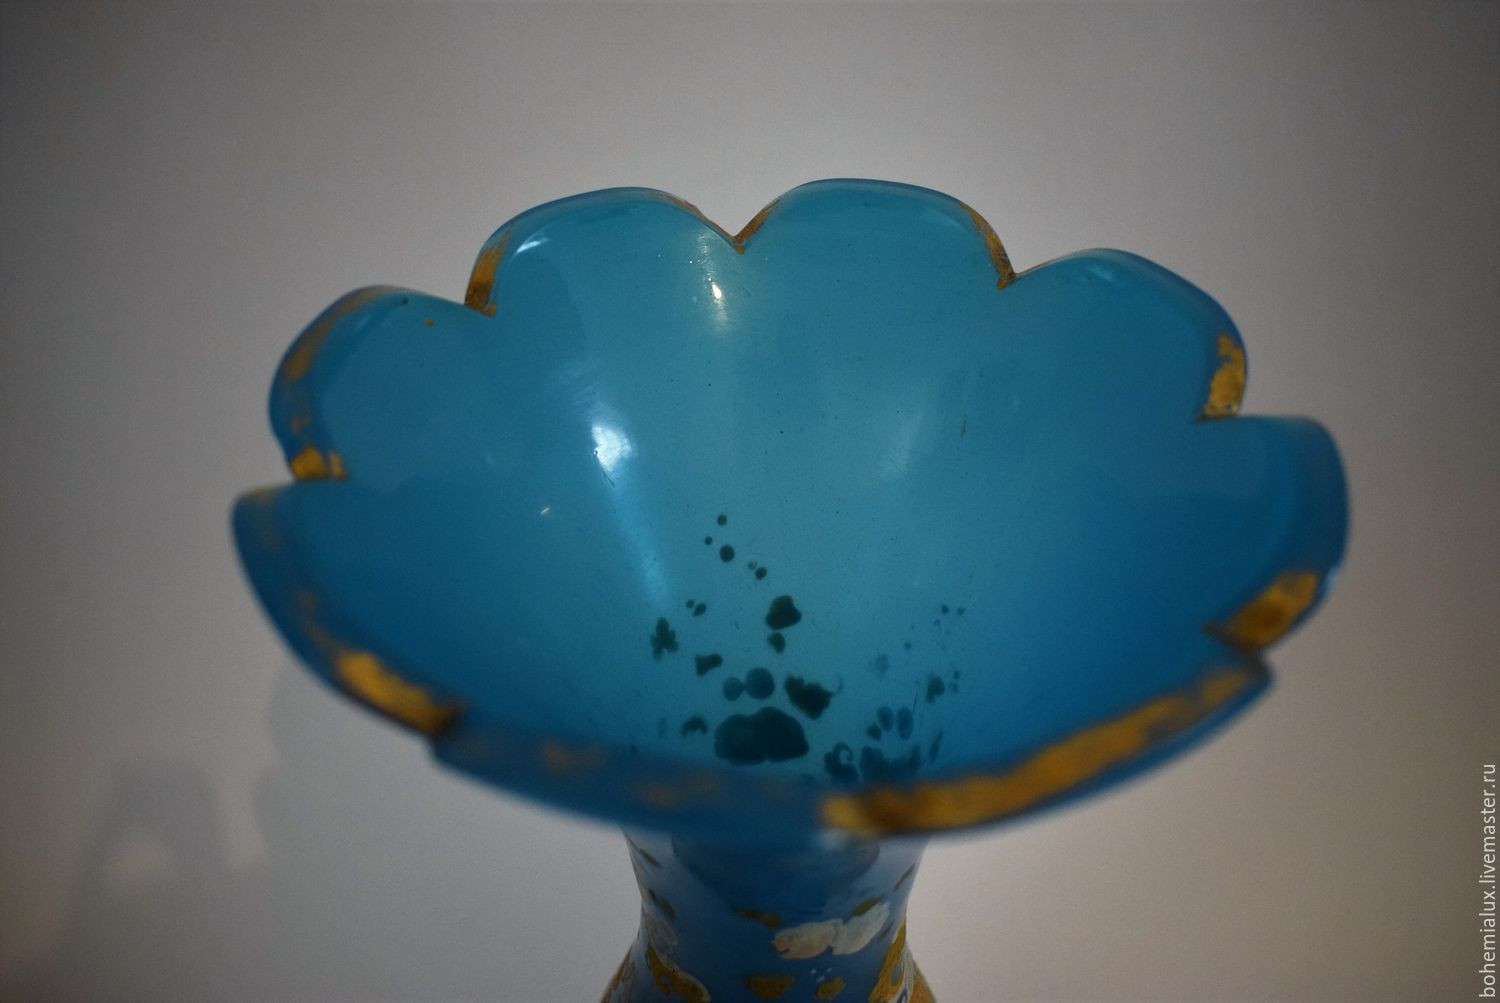 15 Perfect Vintage Blue Vase 2024 free download vintage blue vase of antique opal glass vase 33 cm over 200 years bohemia shop online for vintage interior decor antique opal glass vase 33 cm over 200 years bohemia bohemialux